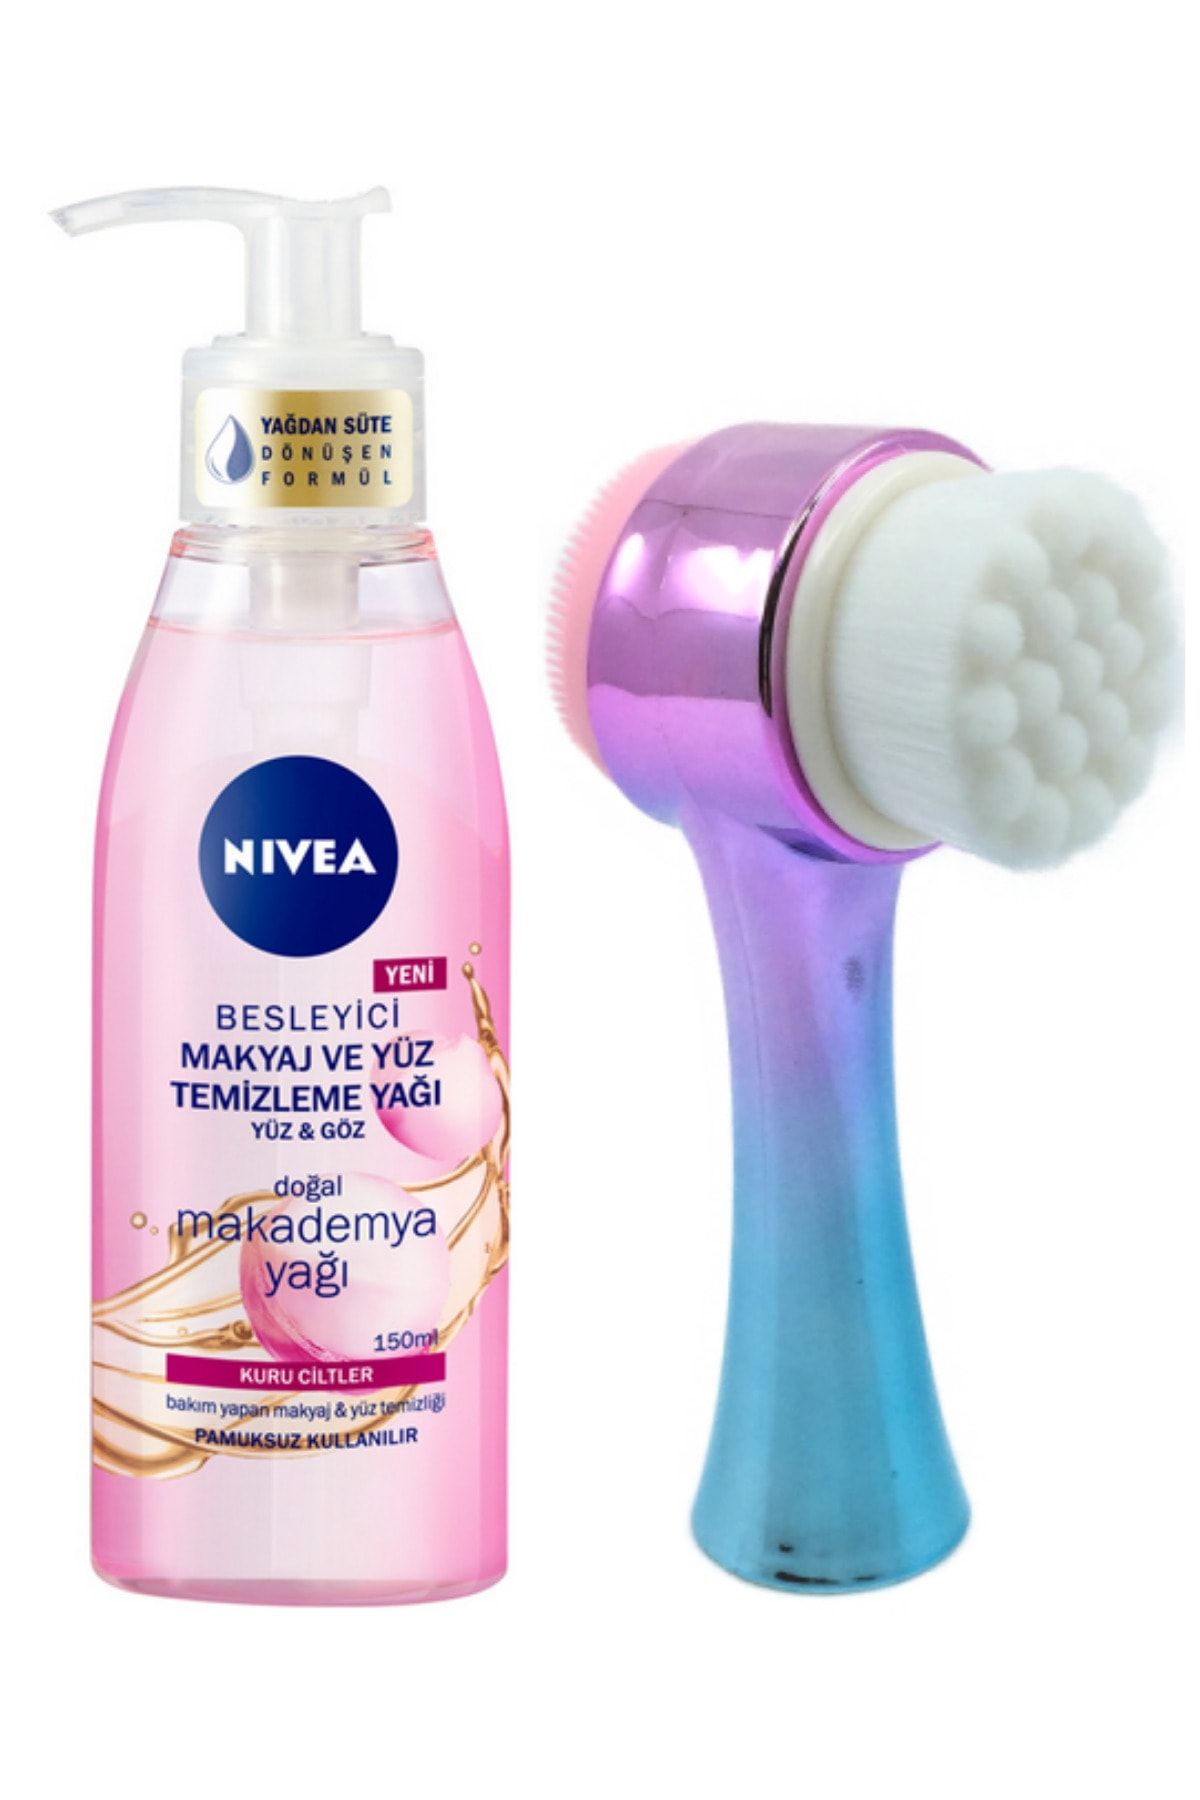 NIVEA Makyaj Ve Yüz Temizleme Yağı Kuru Ciltler 150 ml Ve Fluweel Yüz Temizleme Fırçası Turkuaz